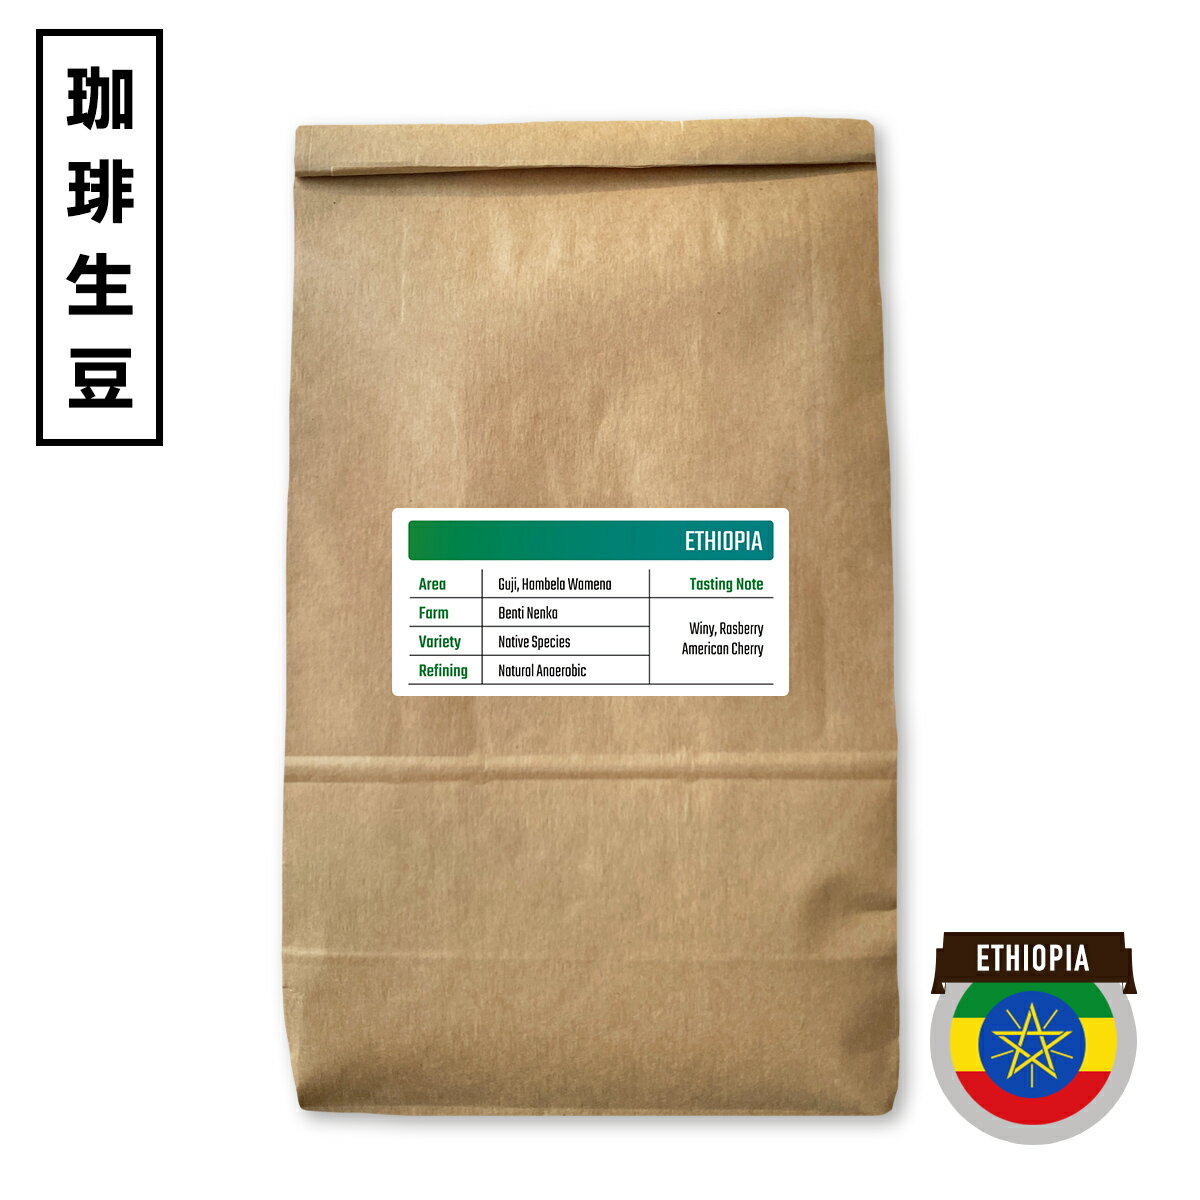 「エチオピア グジ ベンチネンカ ナチュラル アナエロビック」 コーヒー豆